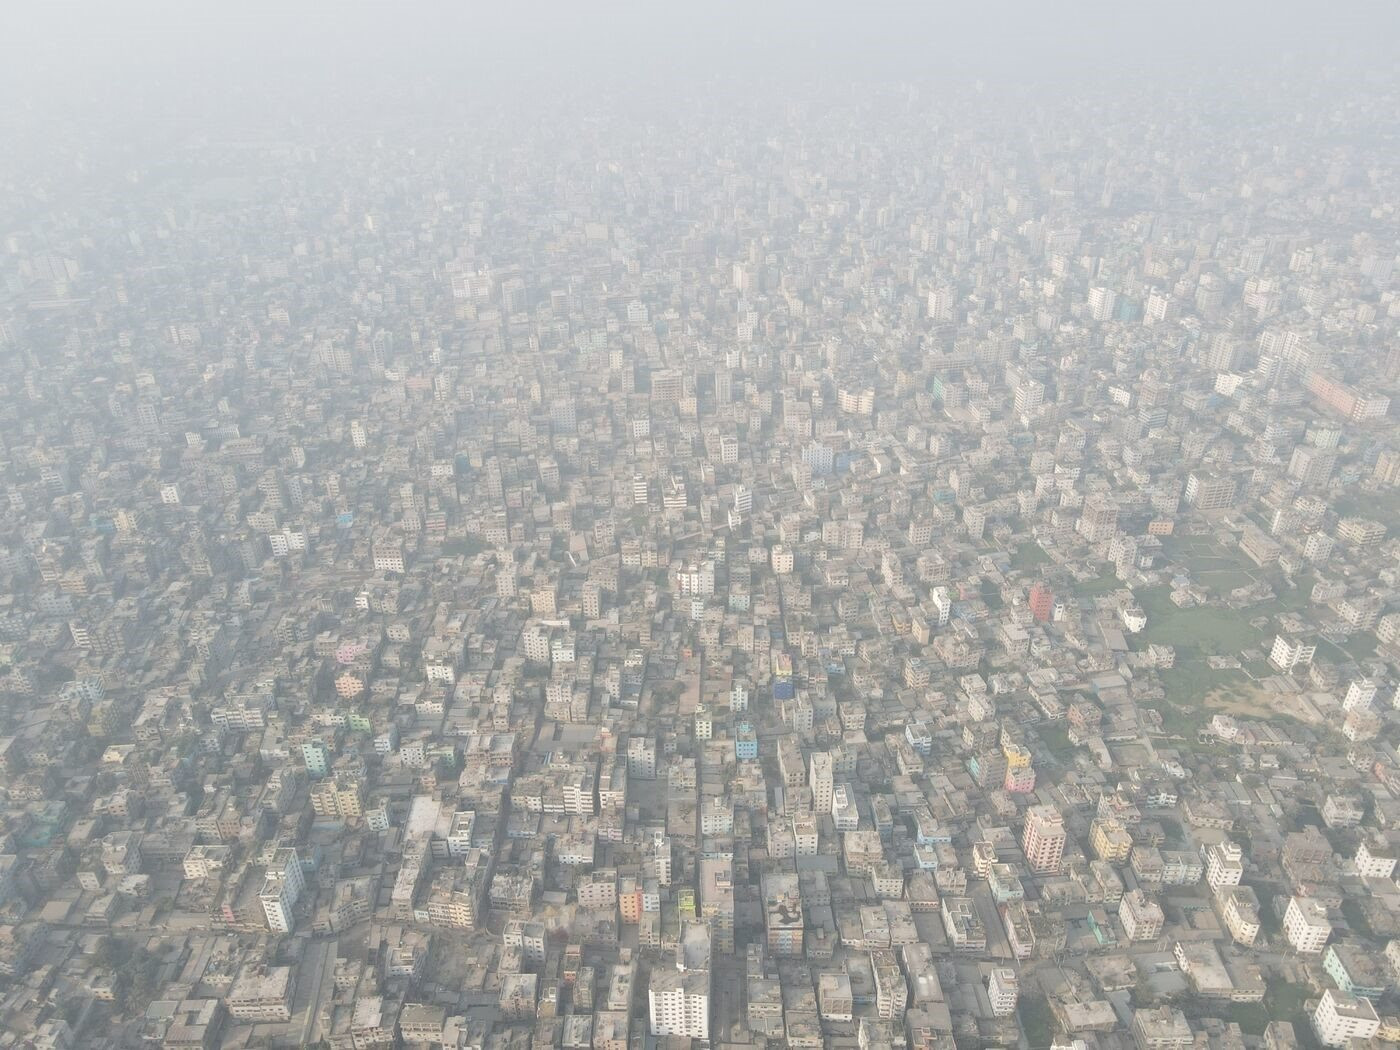 Thở thôi cũng nguy hiểm: Siêu đô thị ở Nam Á lúc nào cũng ngập trong khói mù - Ảnh 1.